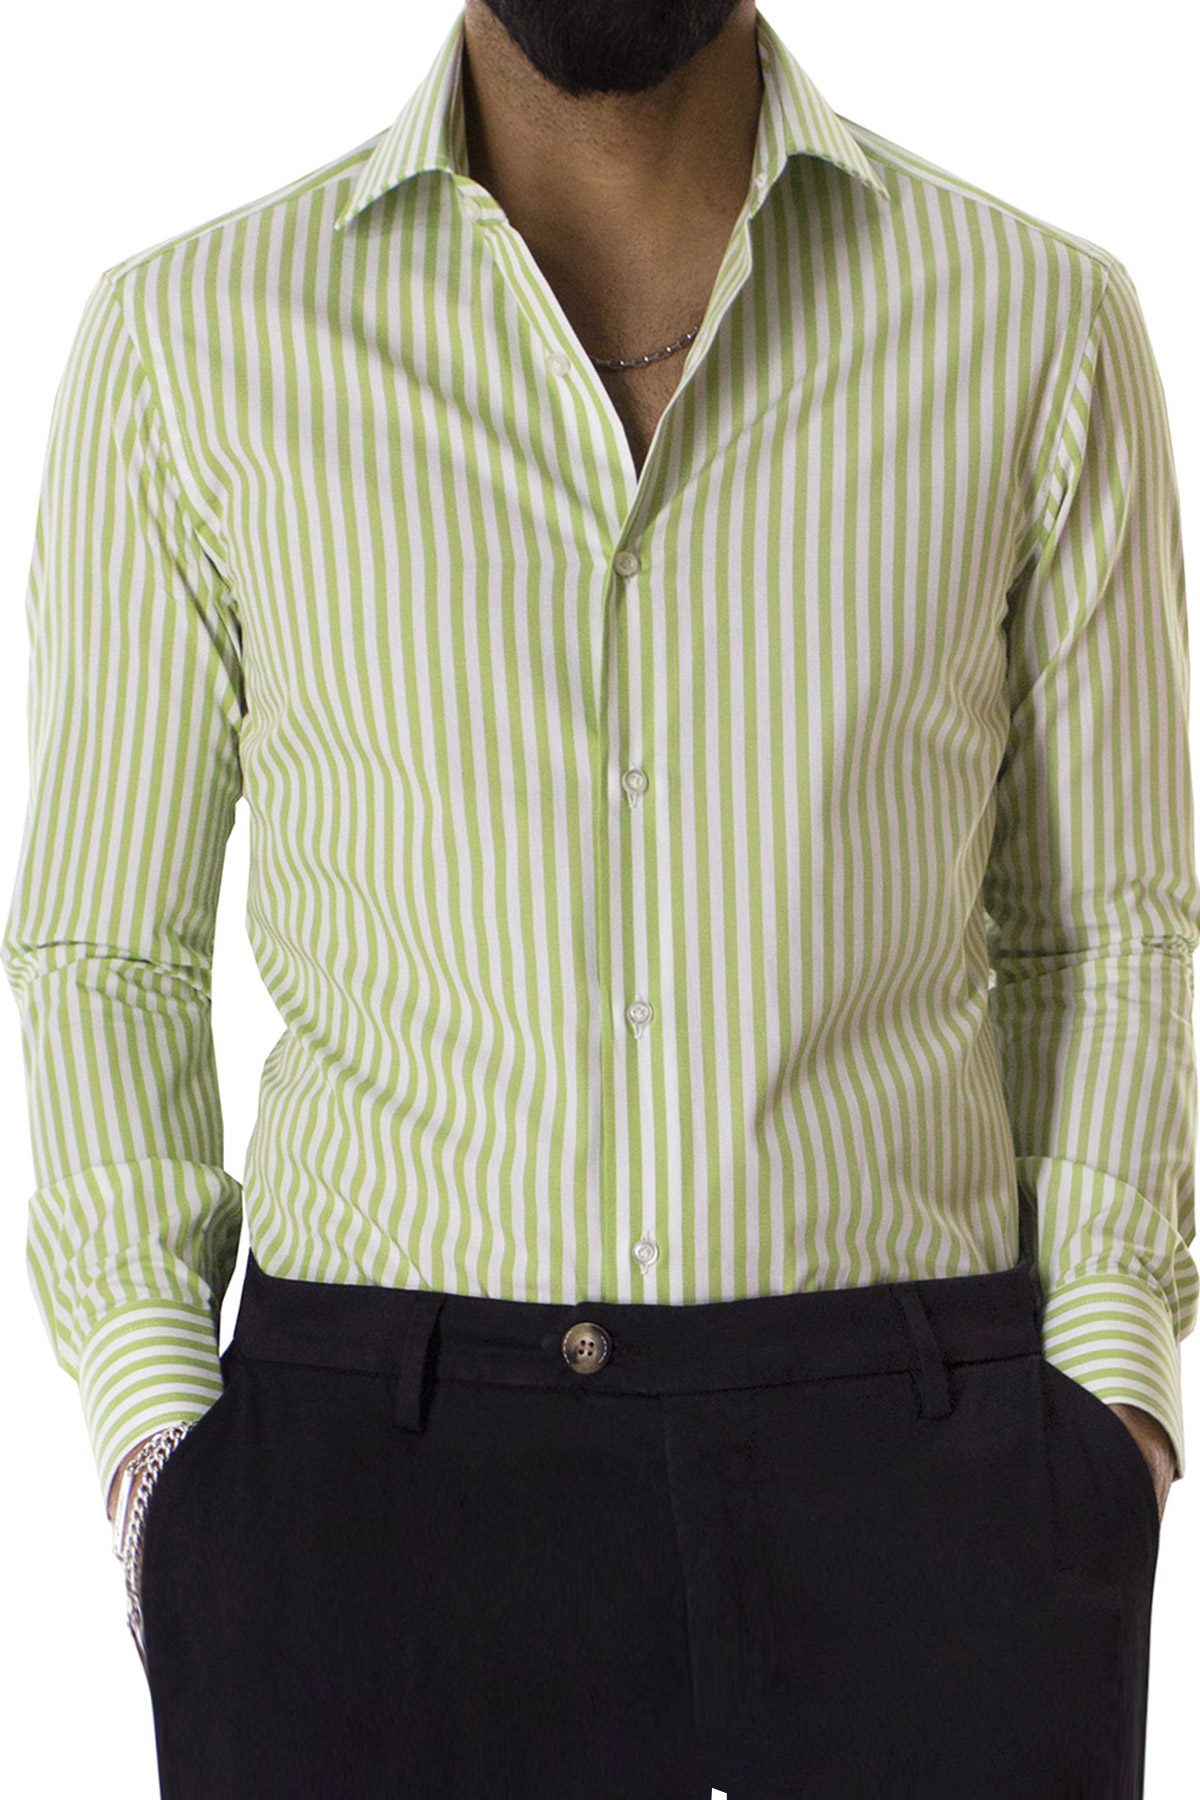 MODA UOMO Camicie & T-shirt Custom fit sconto 62% Verde S NoName Camicia 